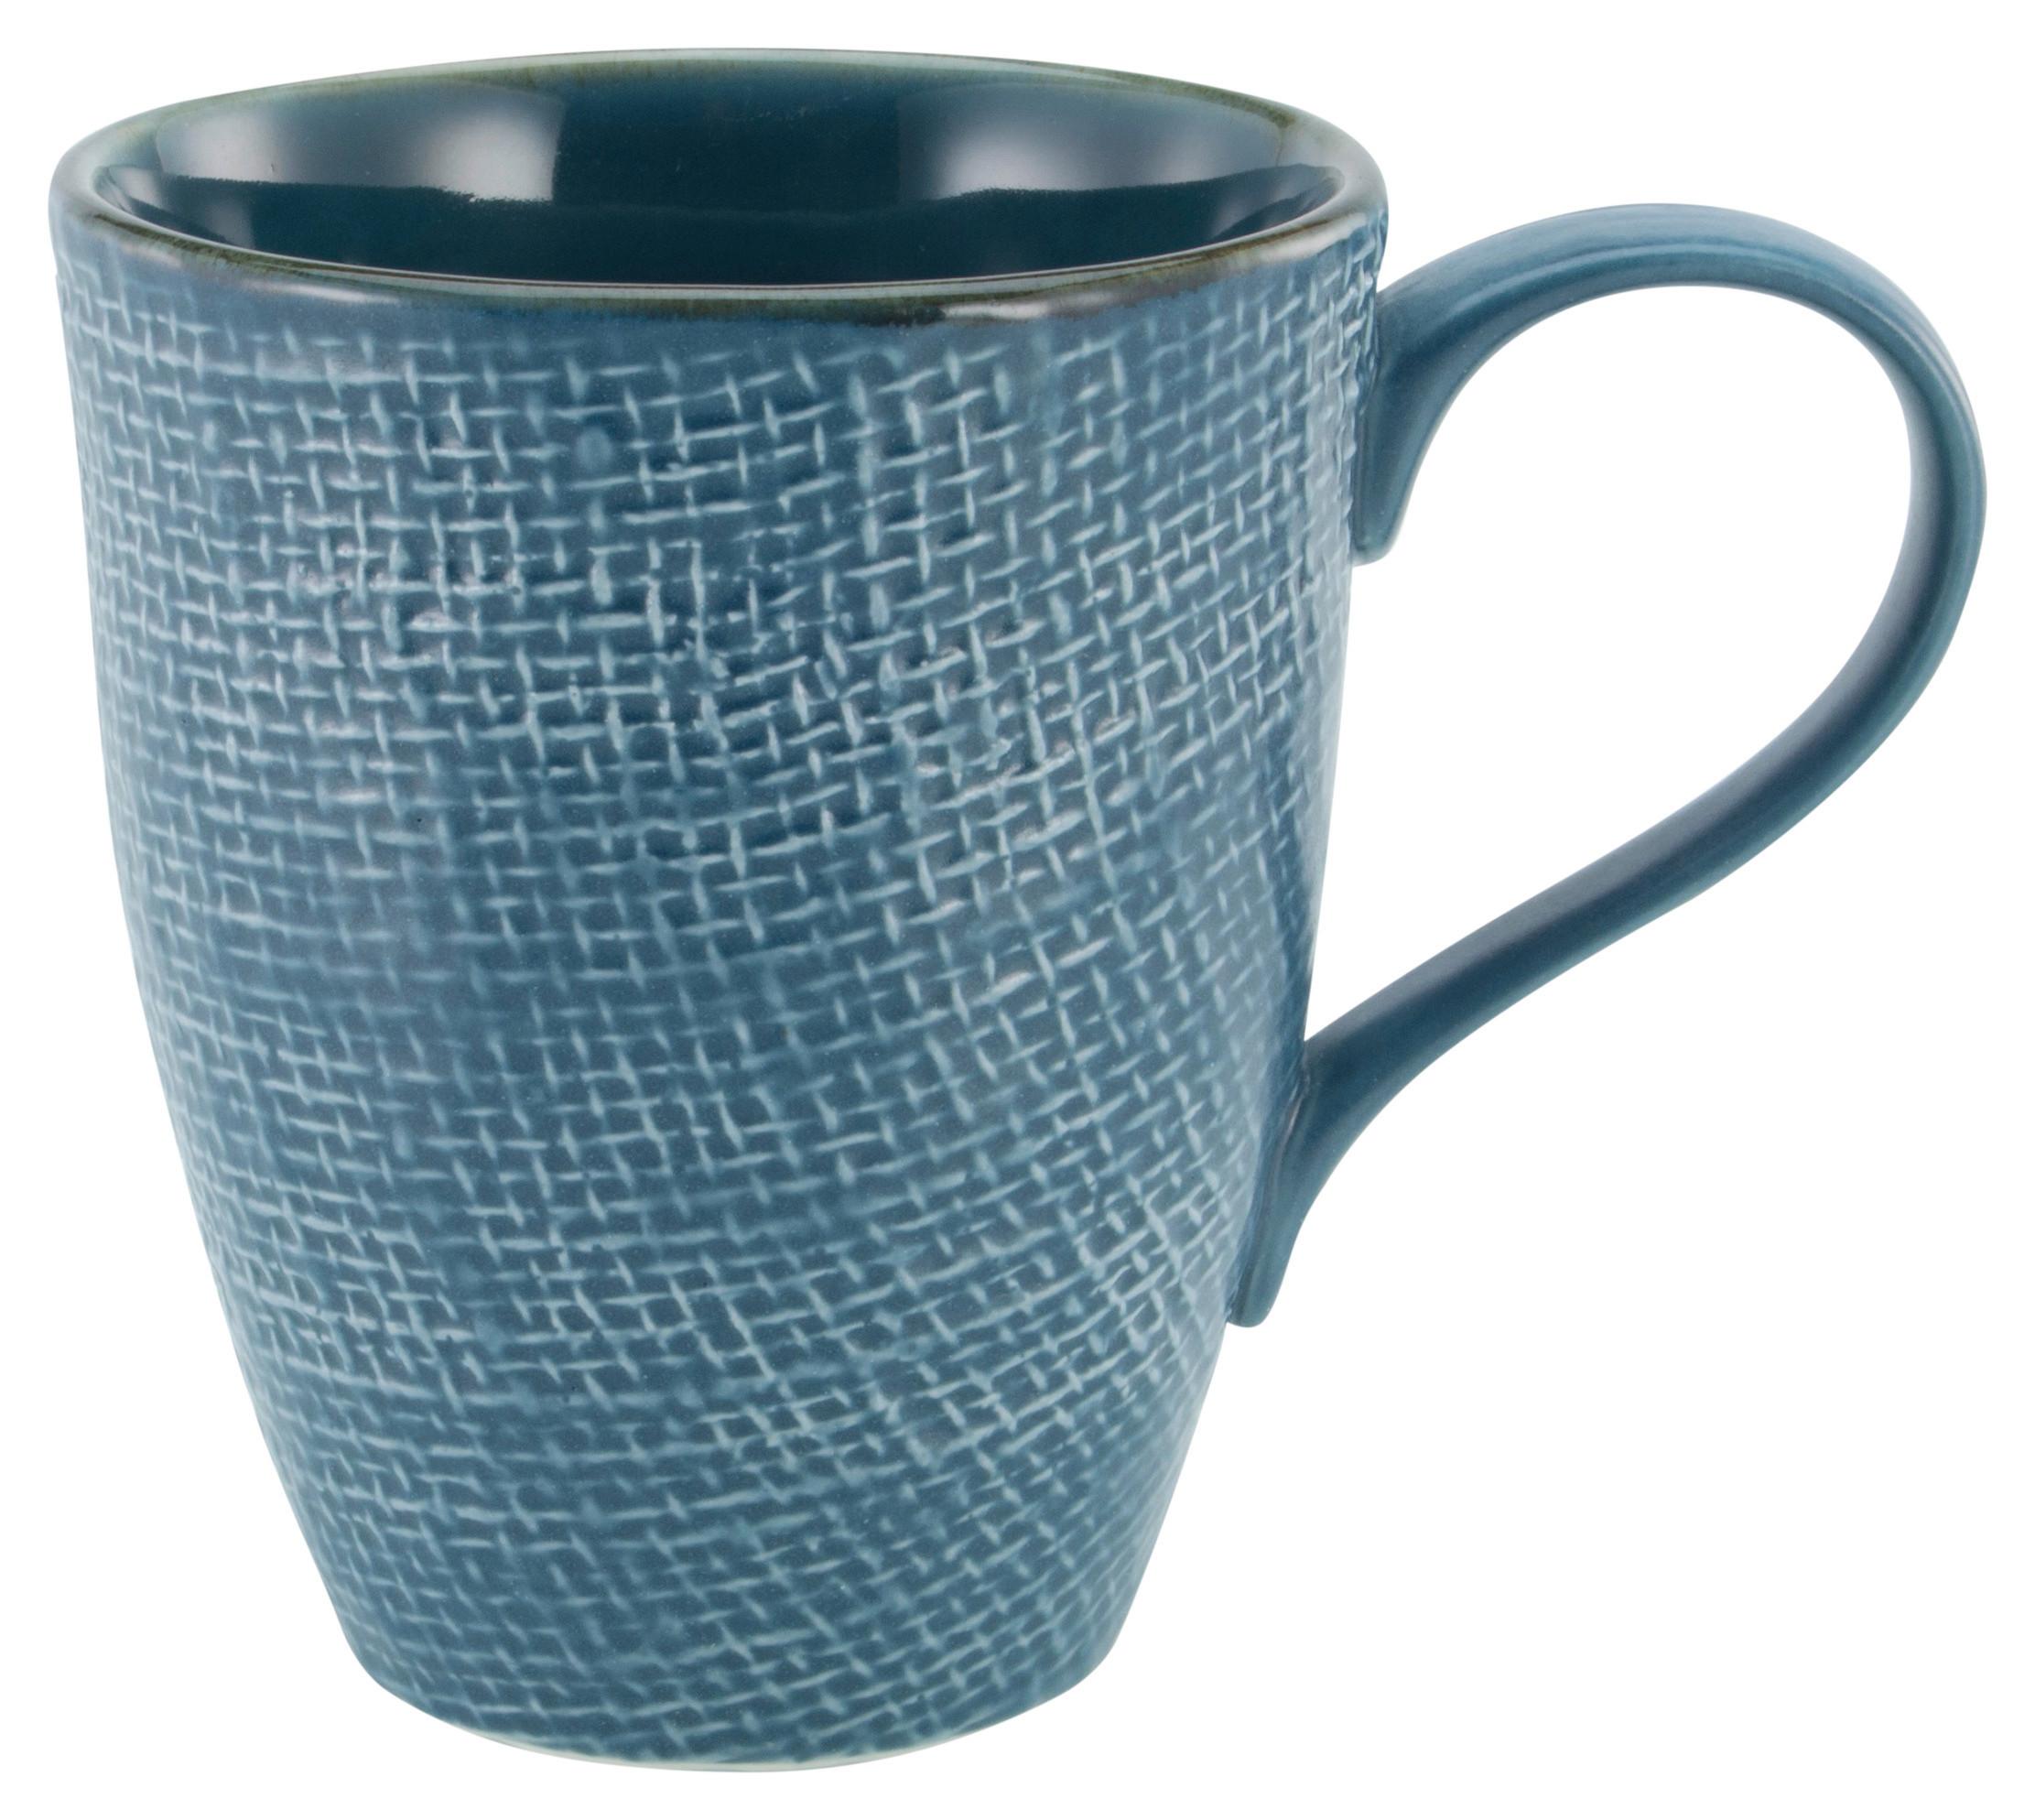 Hrnček Na Kávu Canvas, Ca. 330ml, Modrá - modrá, keramika (13/9/11cm) - Premium Living